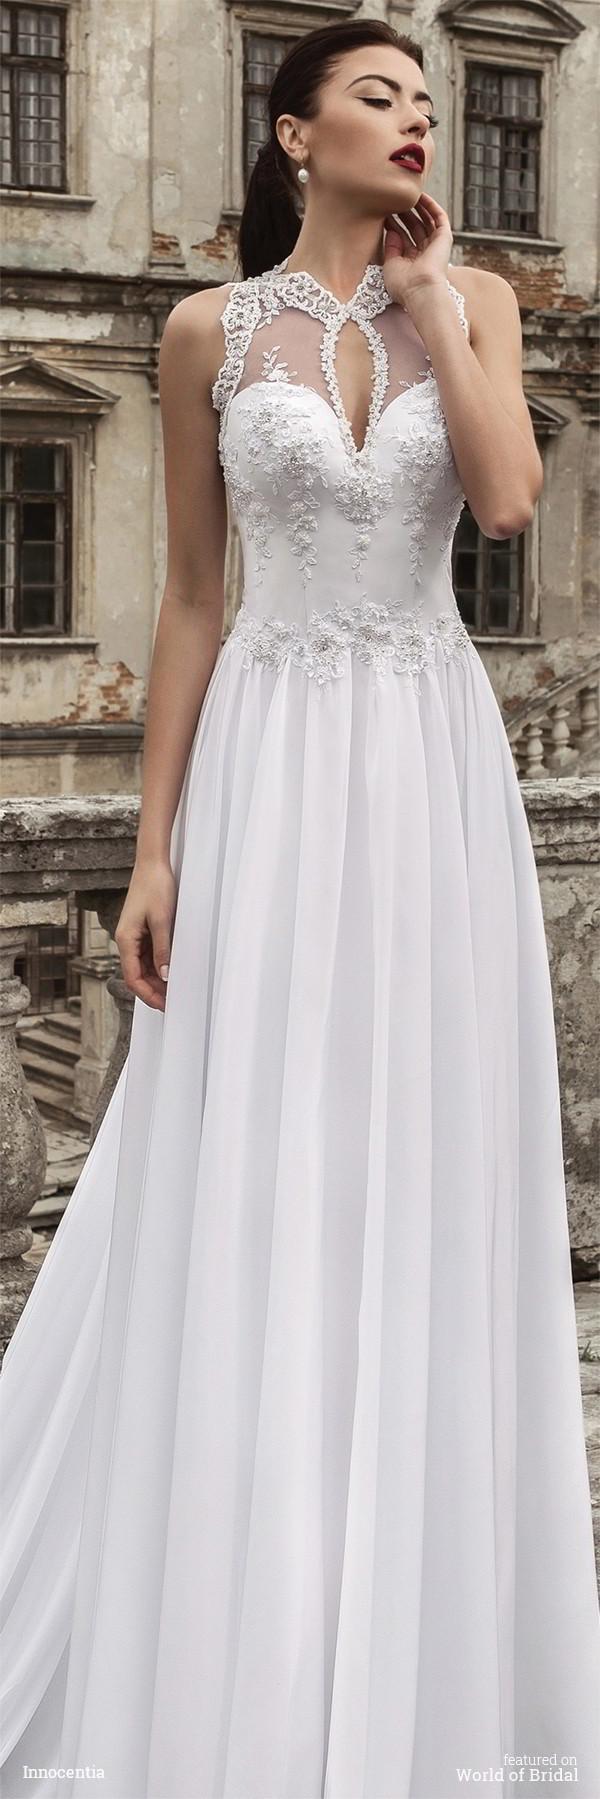 زفاف - Innocentia 2016 Wedding Dresses